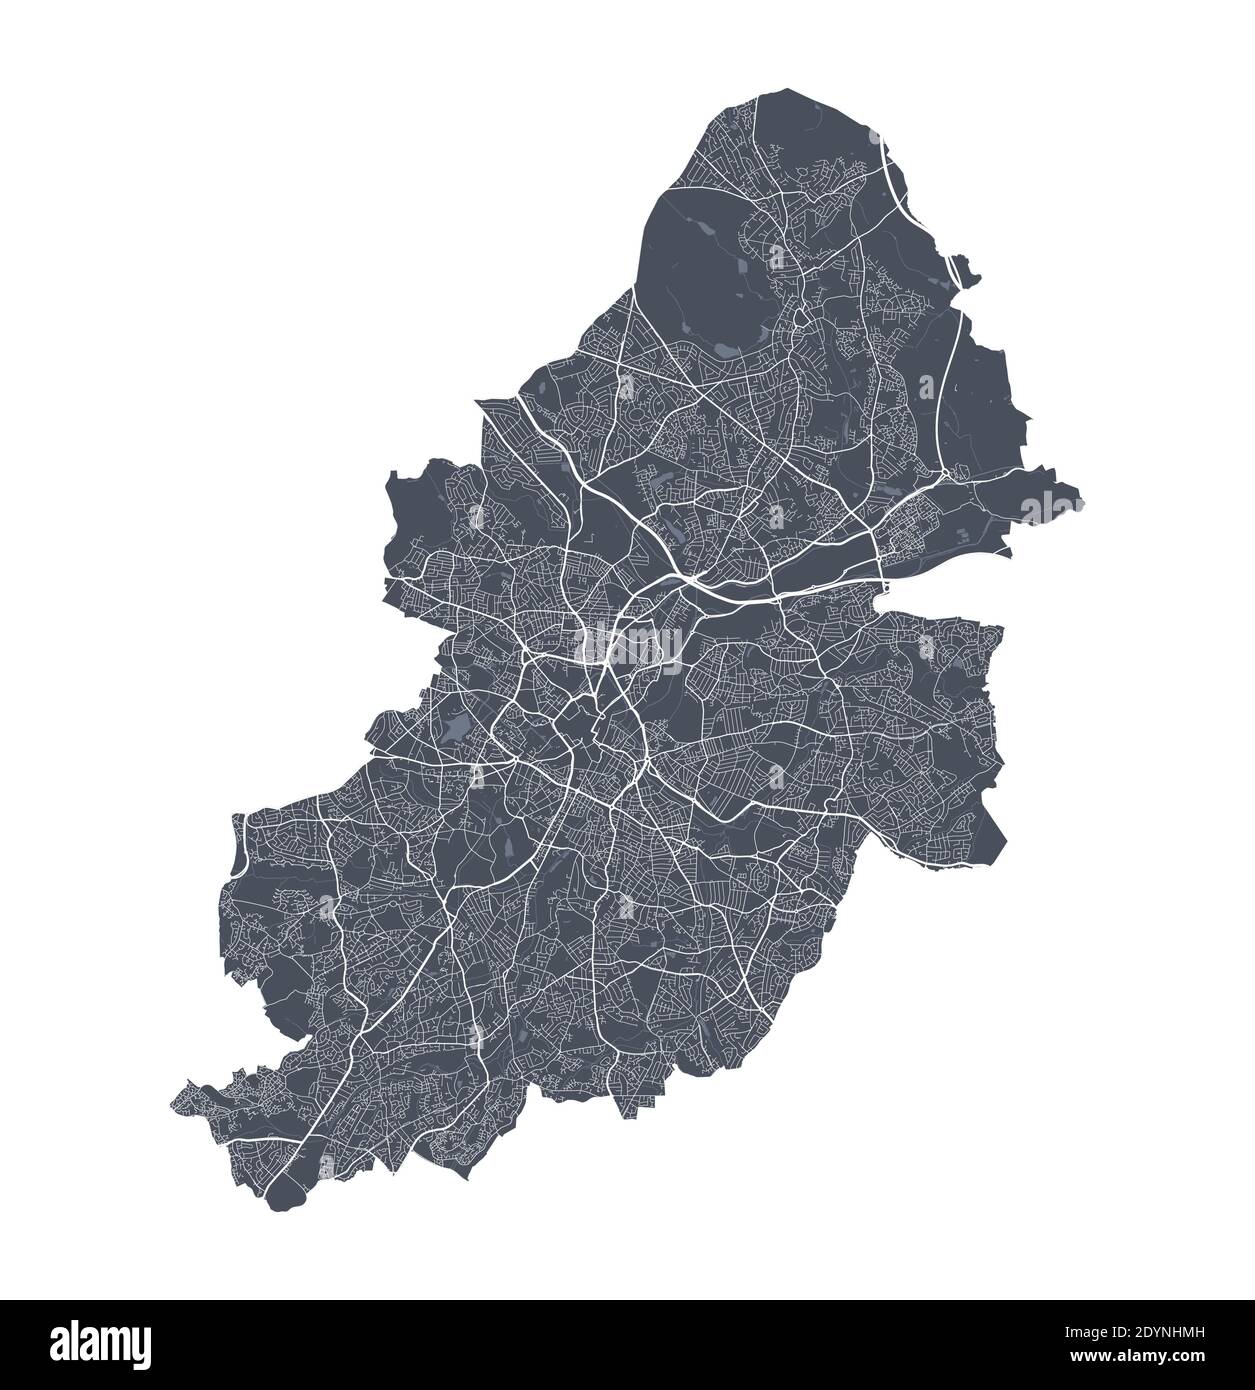 Mappa di Birmingham. Mappa vettoriale dettagliata dell'area amministrativa della città di Birmingham. Poster del paesaggio urbano vista aria metropolitana. Terra scura con strade bianche, roa Illustrazione Vettoriale